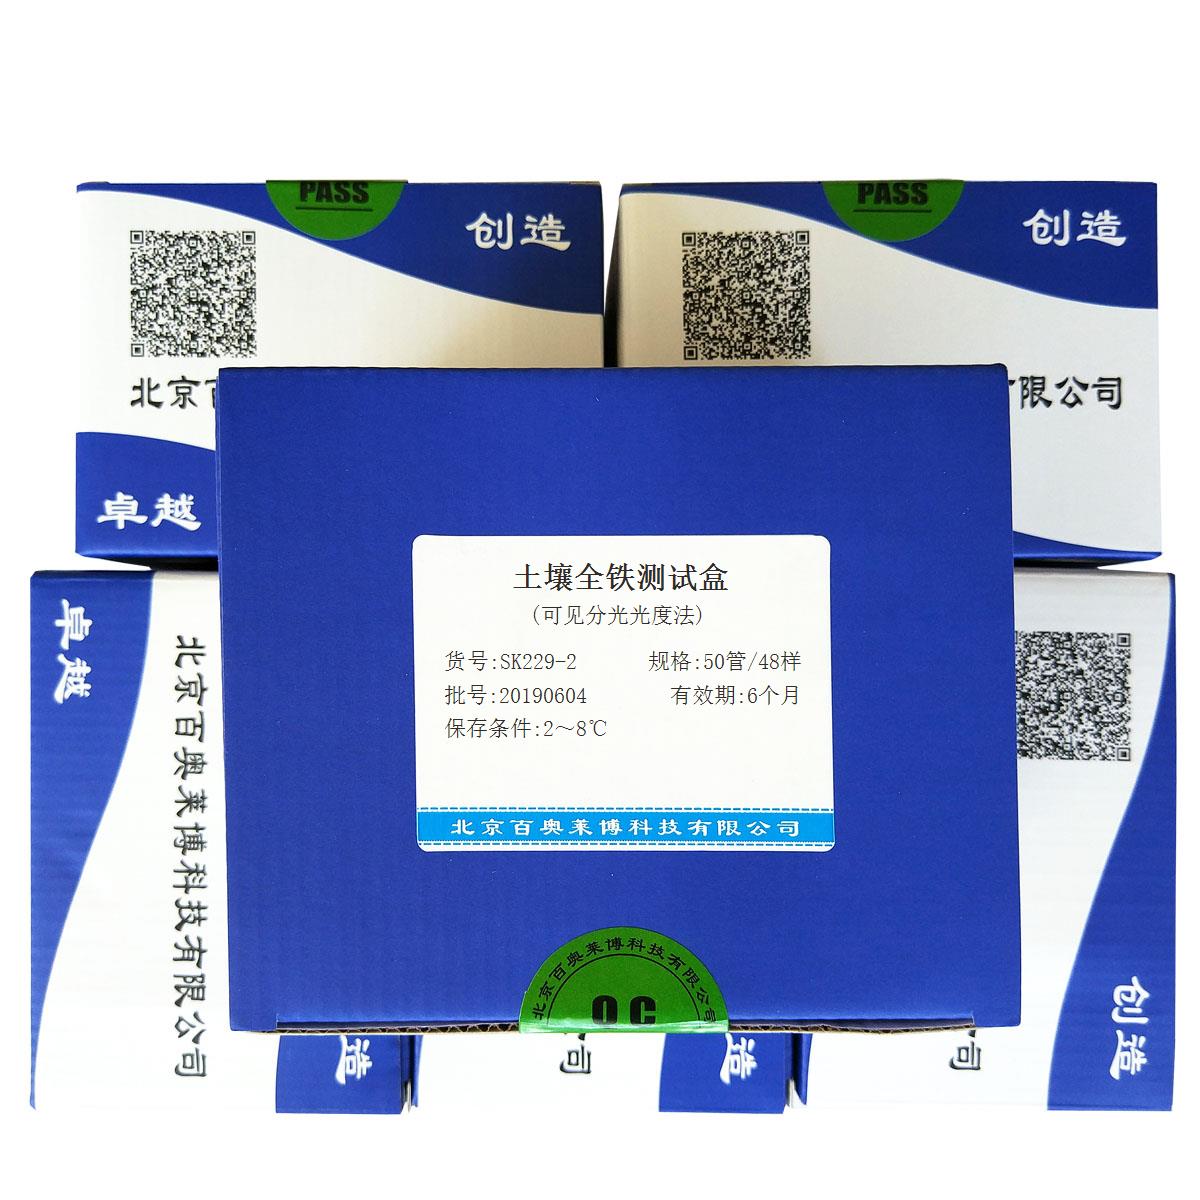 土壤全铁测试盒(可见分光光度法)北京品牌